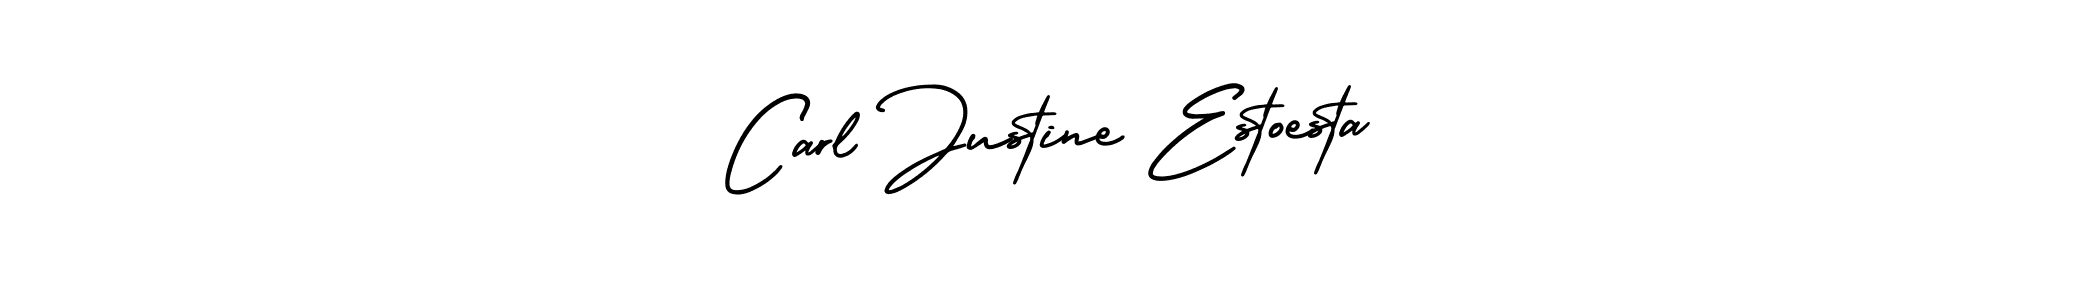 Best and Professional Signature Style for Carl Justine Estoesta. AmerikaSignatureDemo-Regular Best Signature Style Collection. Carl Justine Estoesta signature style 3 images and pictures png